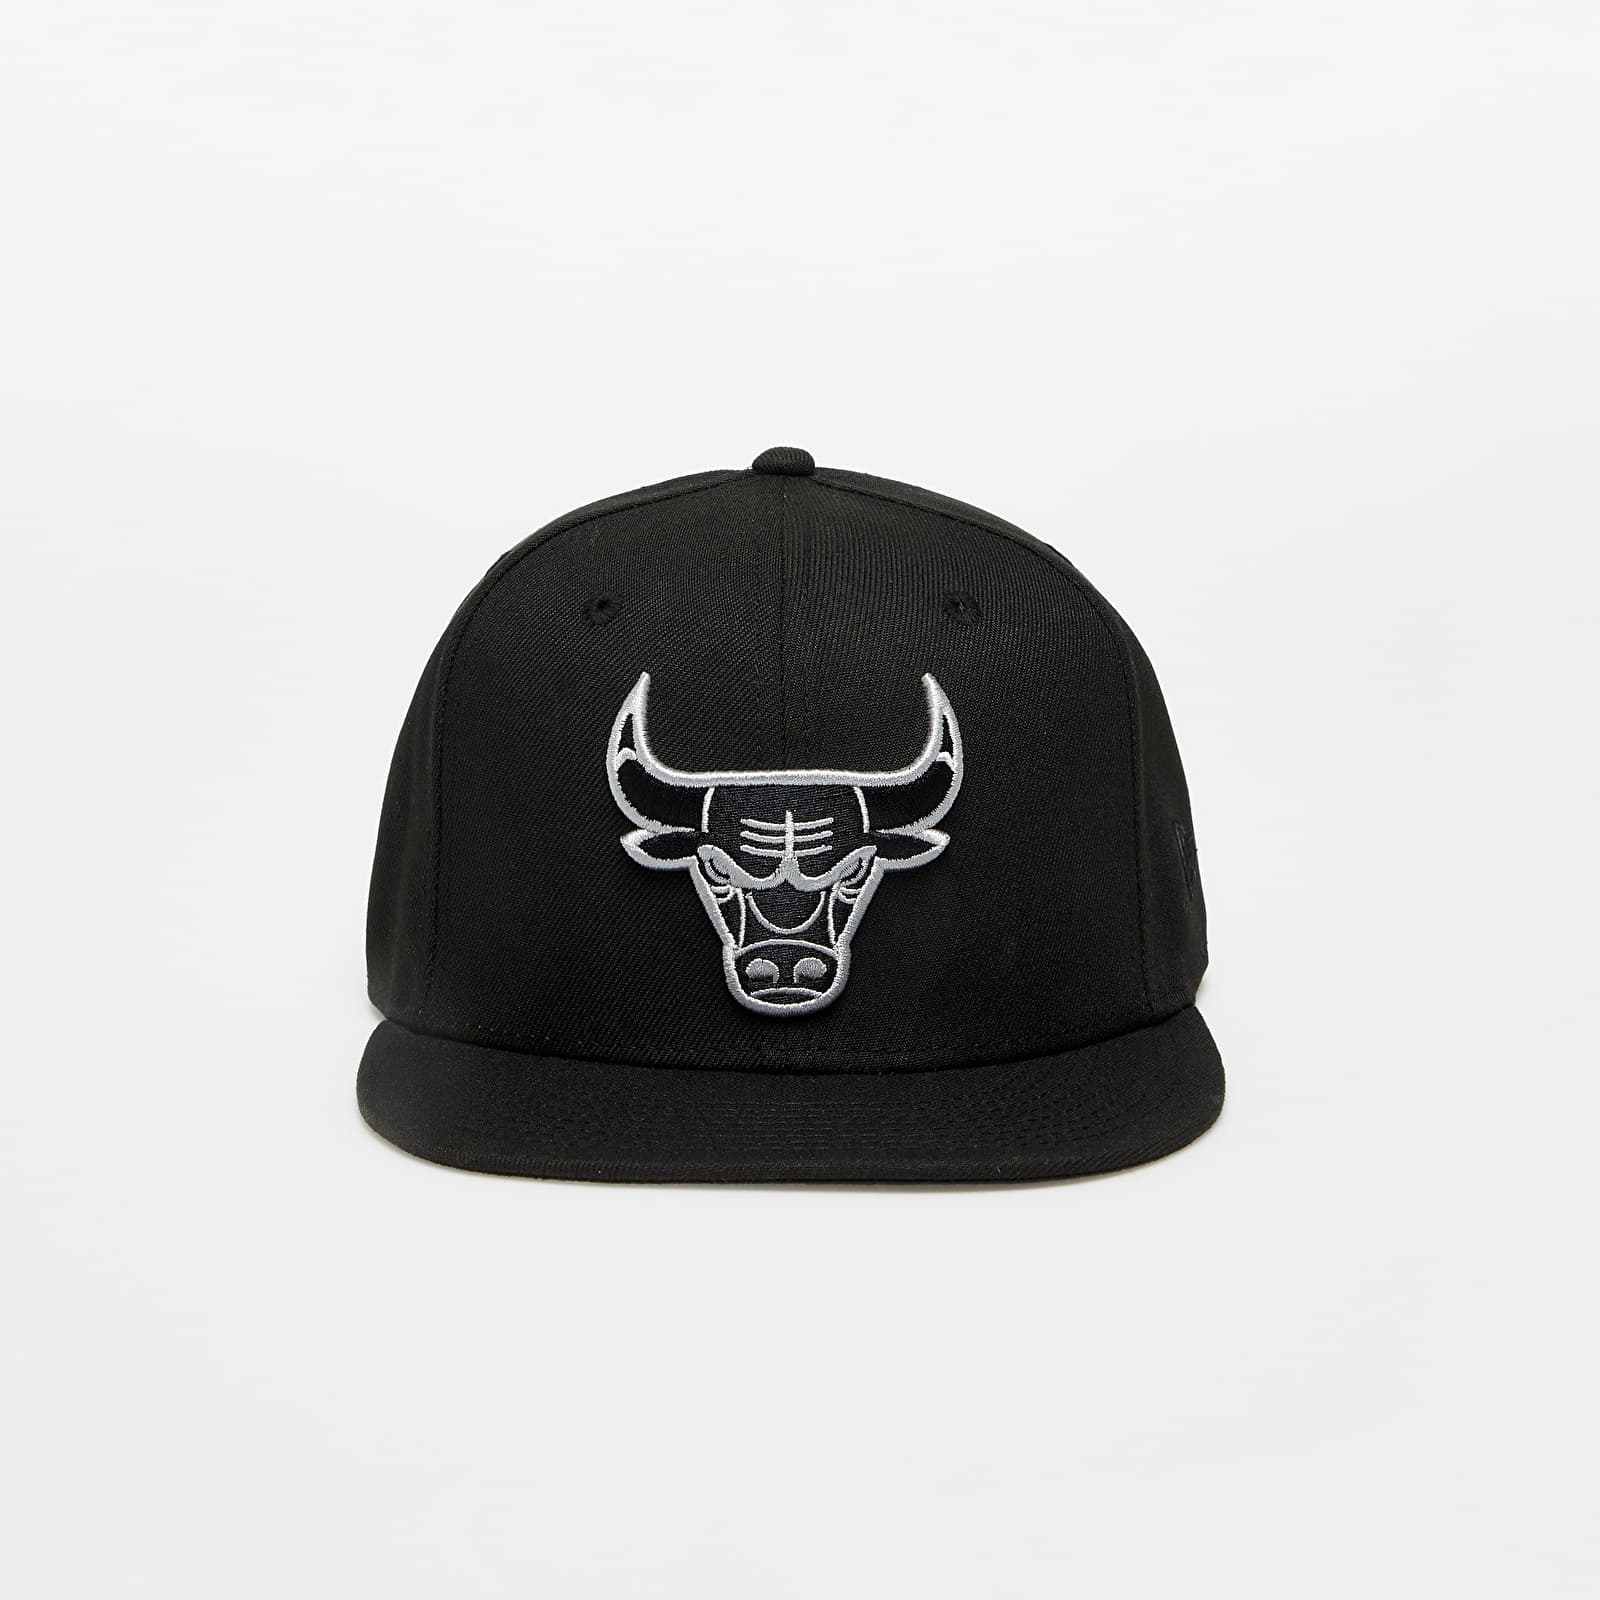 Καπέλα New Era Chicago Bulls 9FIFTY Snapback Cap Black